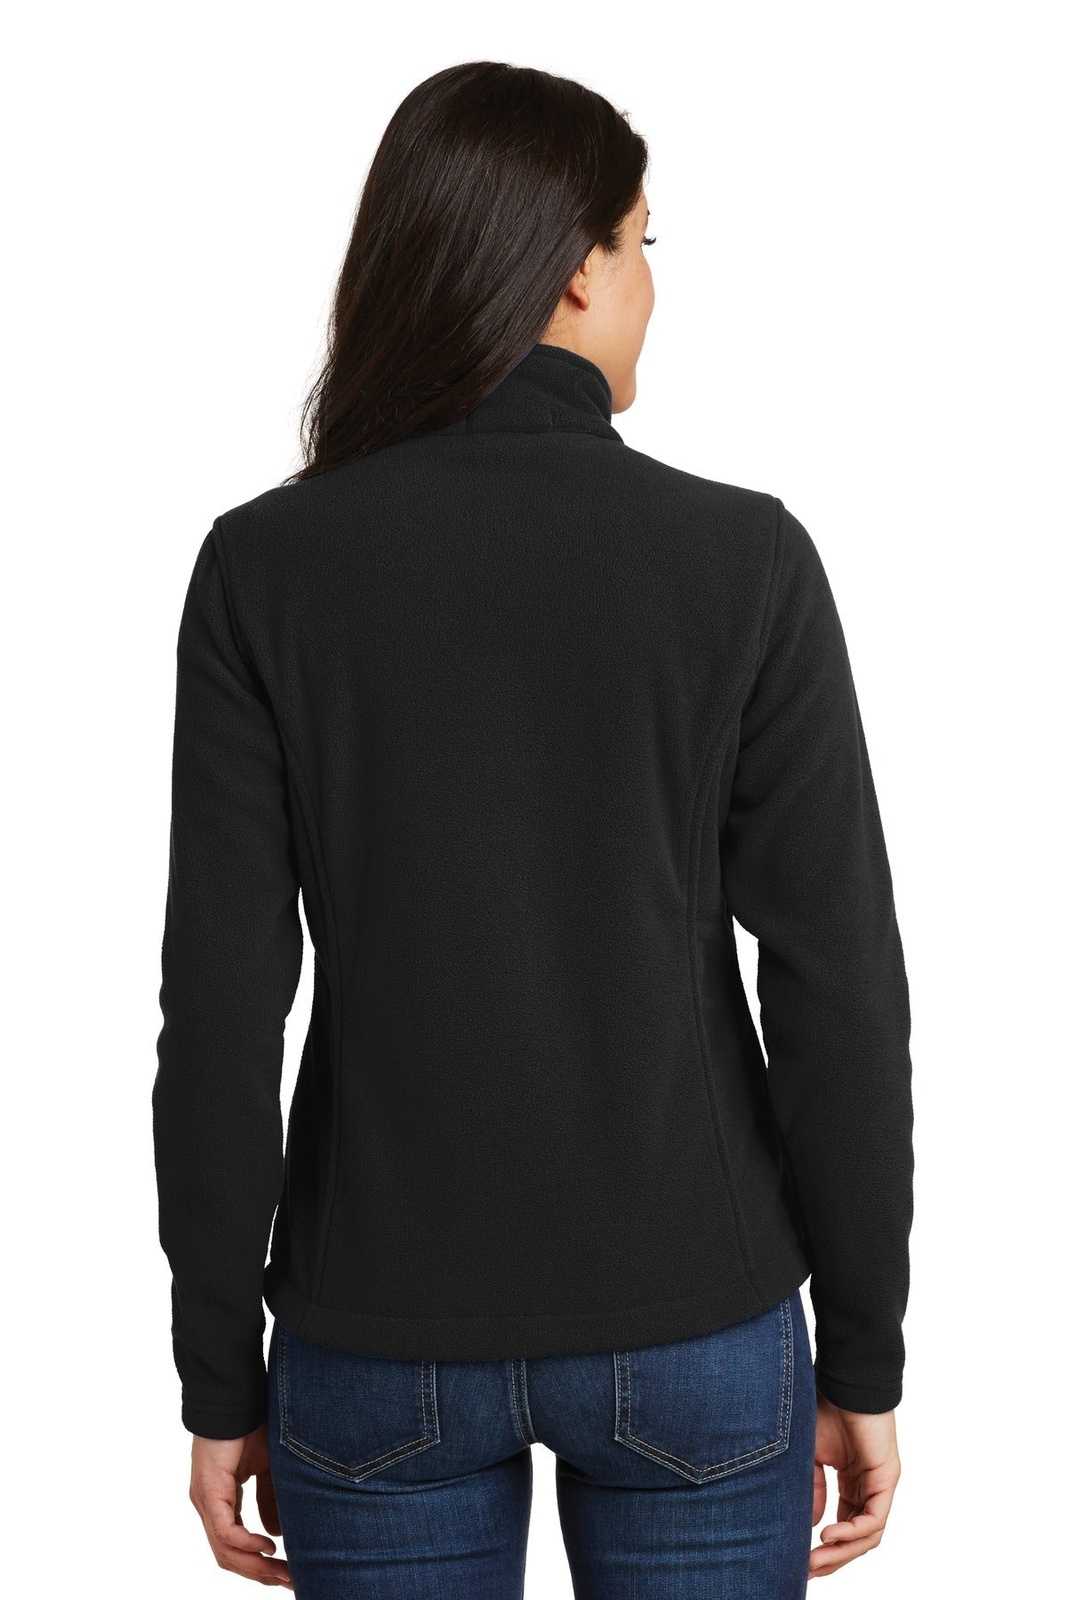 Port Authority L217 Ladies Value Fleece Jacket - Black - HIT a Double - 1